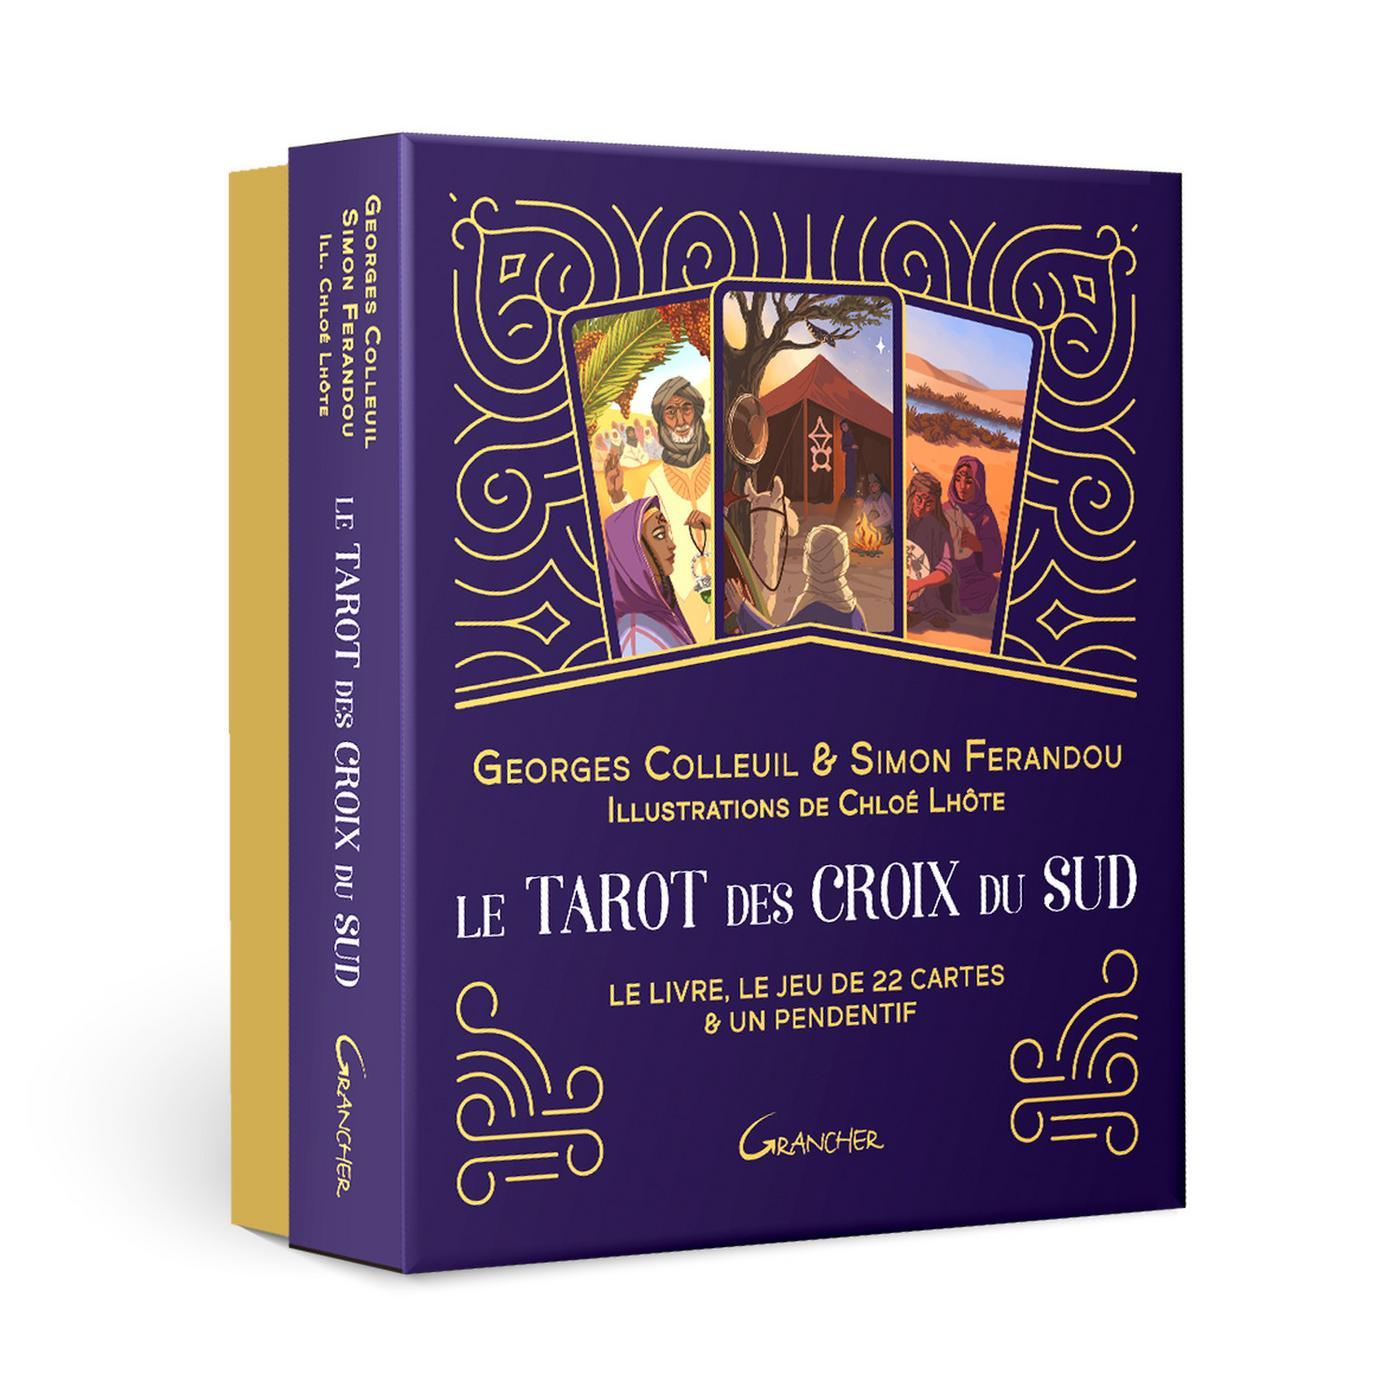 Le tarot des croix du sud : le livre, le jeu de 22 cartes & un pendentif :  Georges Colleuil,Simon Ferandou - 273391538X